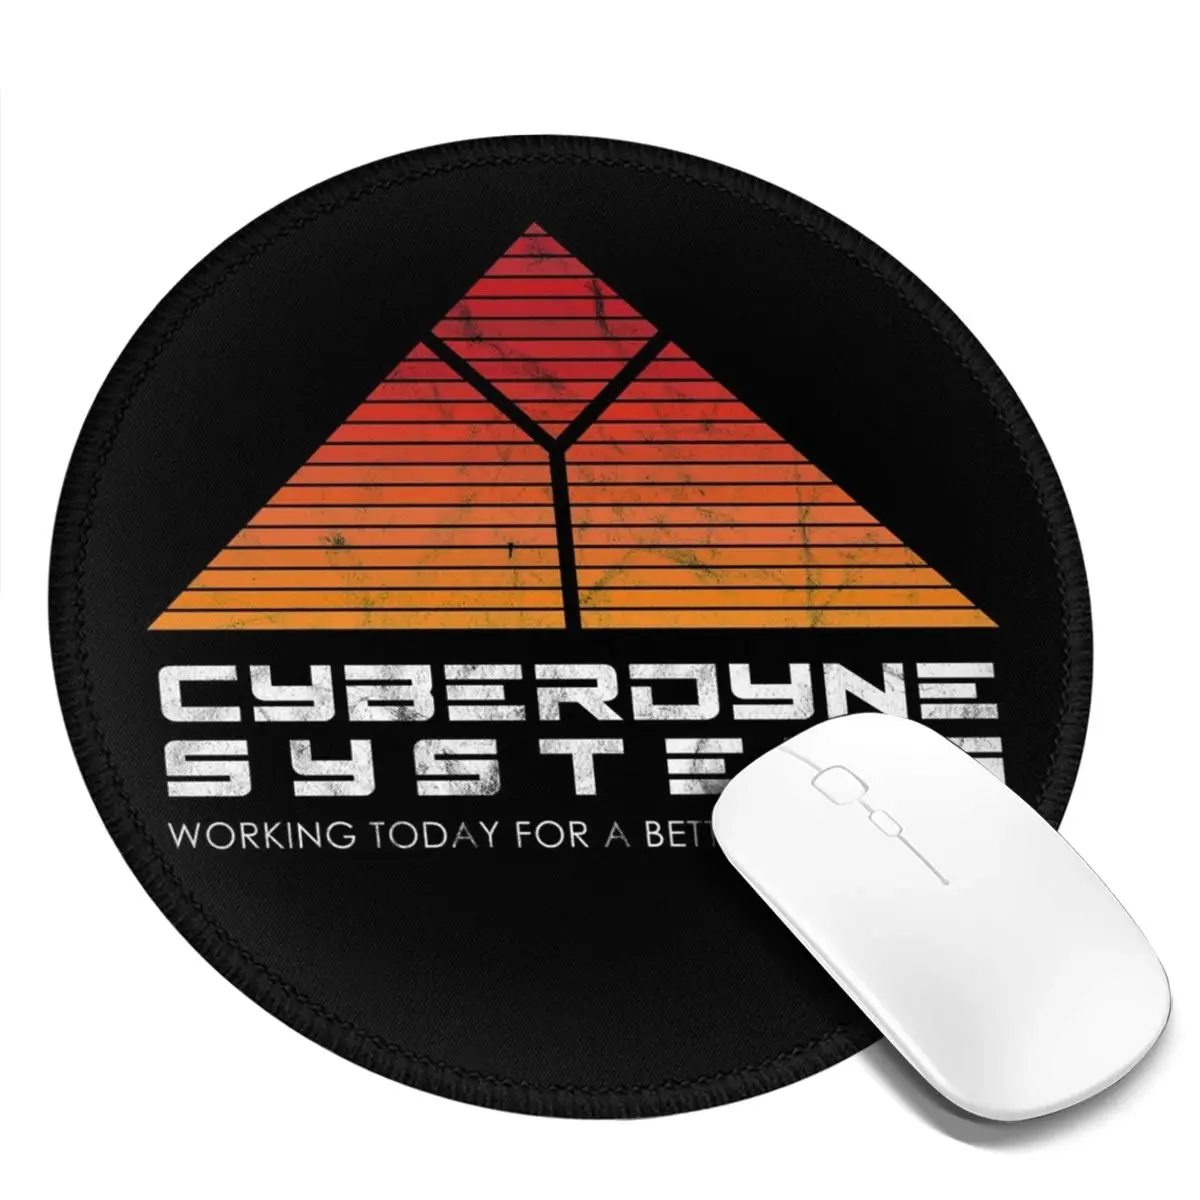 

Терминатор T-800 коврик для мыши cyberdyne systems skynet, высококачественный резиновый коврик для мыши с защитой от усталости, цветной офисный коврик для мыши